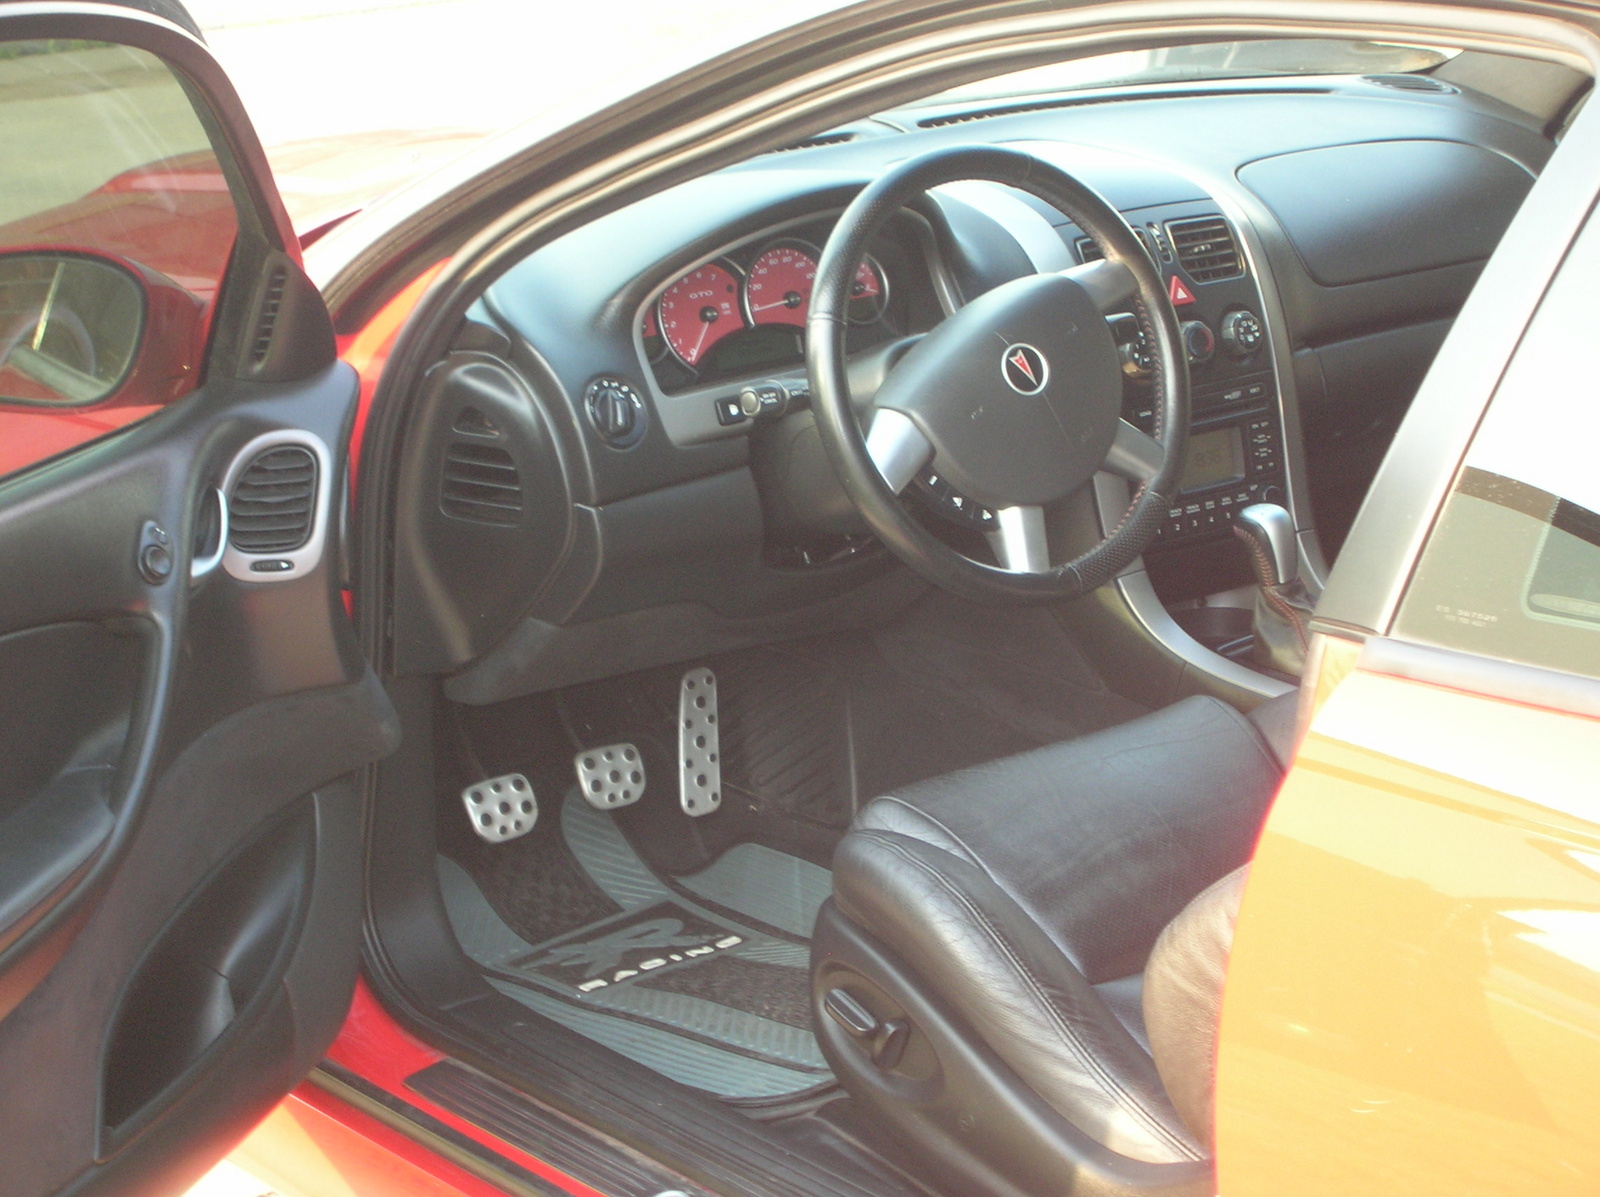 2005 Pontiac GTO - Pictures - CarGurus